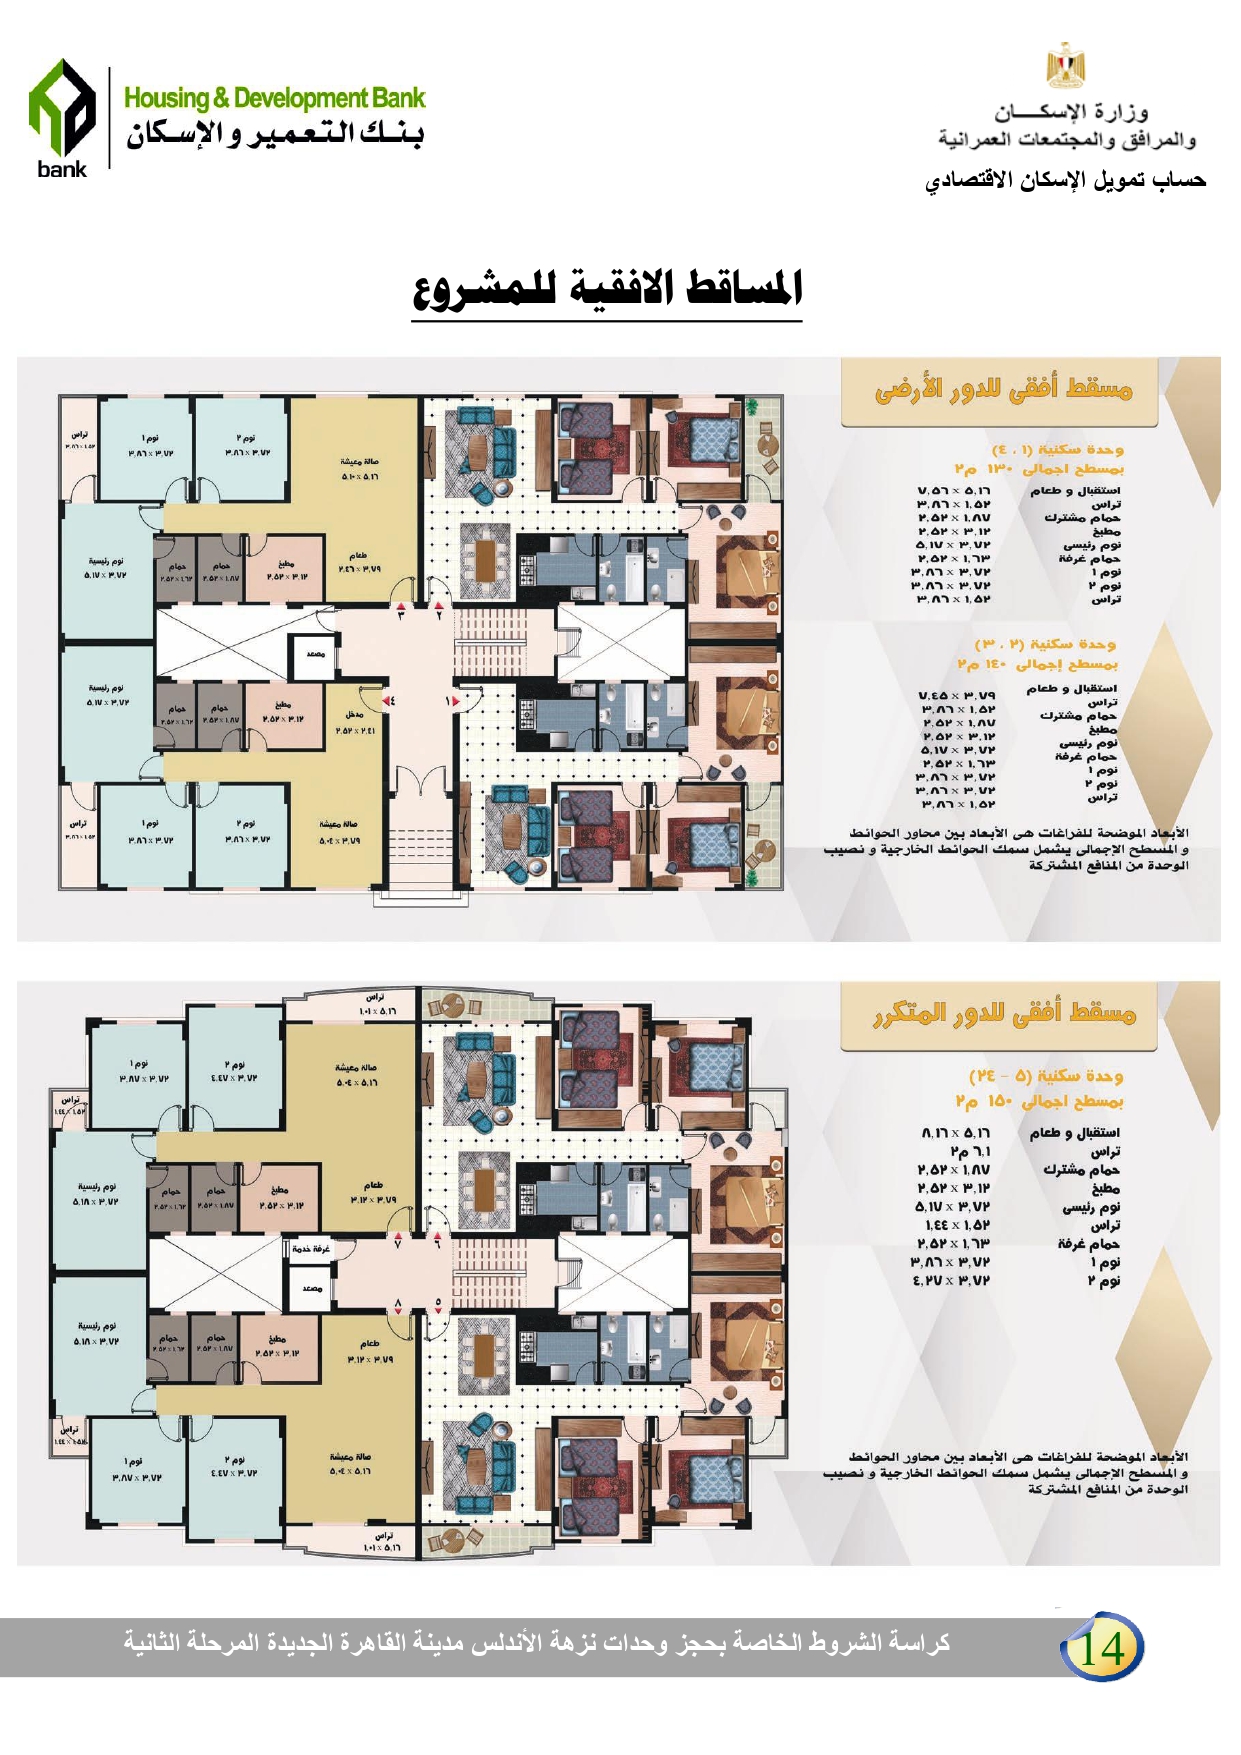 الإسكان تطرح 380 شقة جديدة بالقاهرة الجديدة اعرف الشروط والأسعار